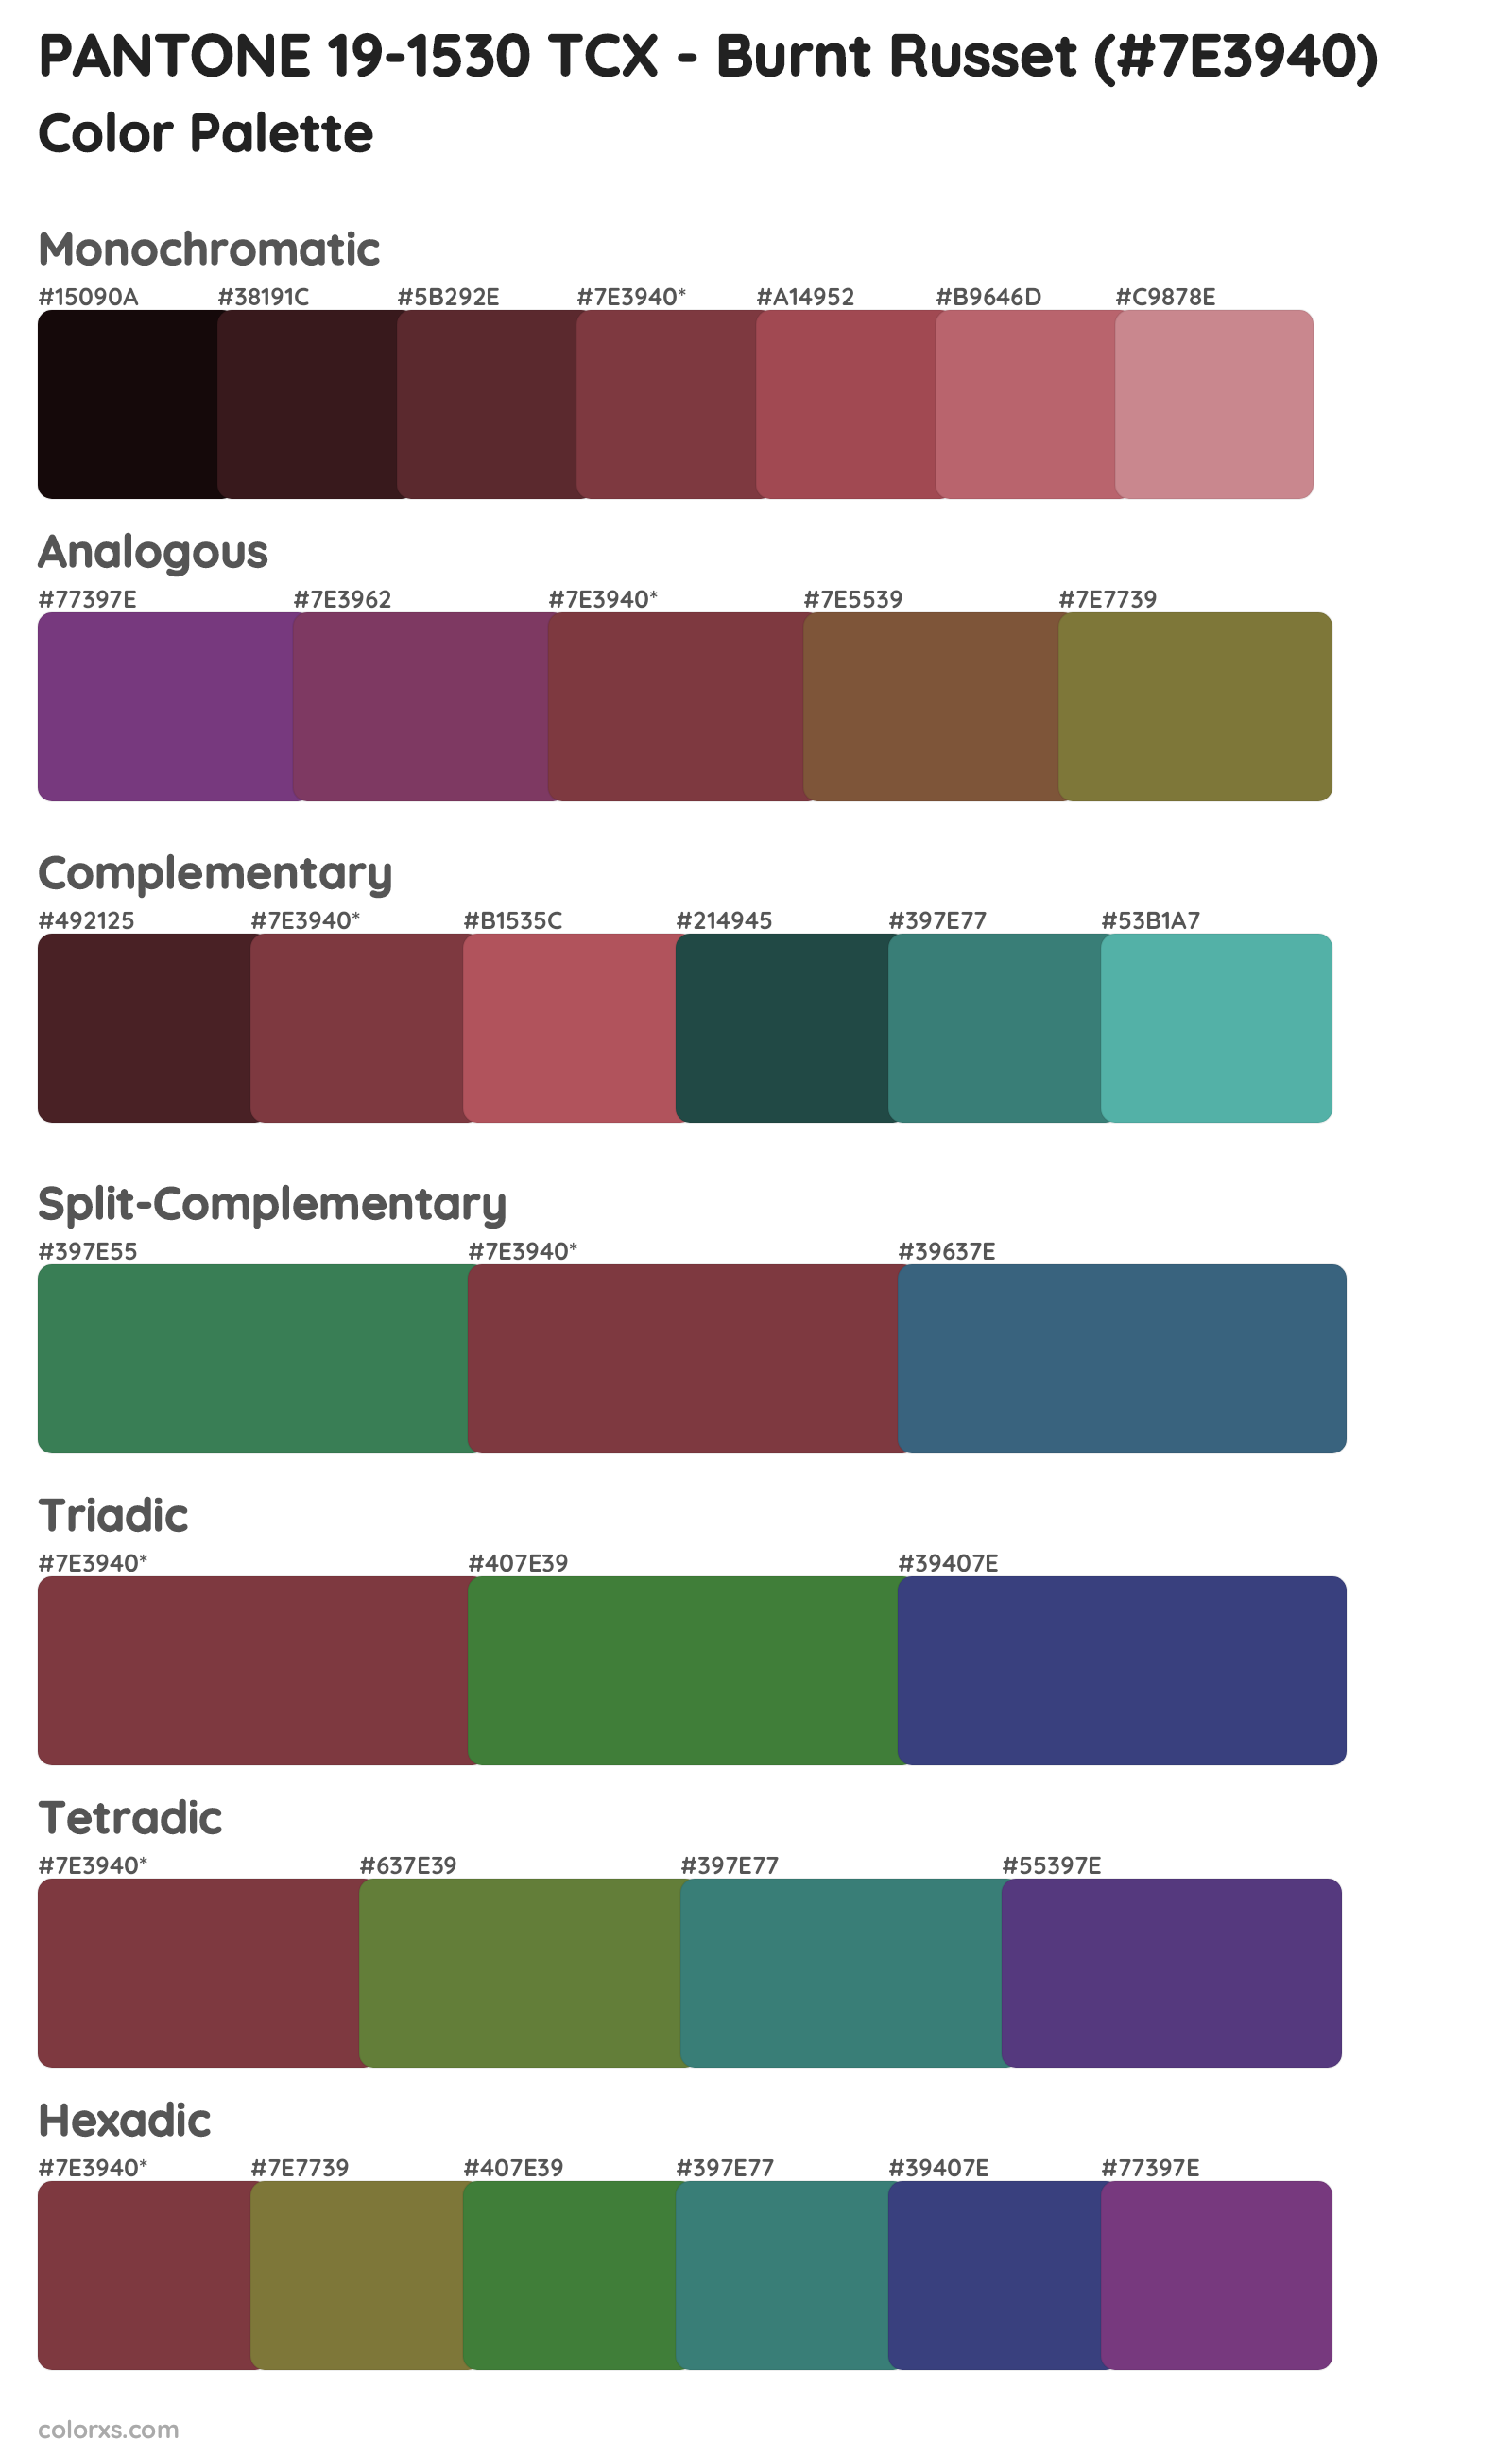 PANTONE 19-1530 TCX - Burnt Russet Color Scheme Palettes